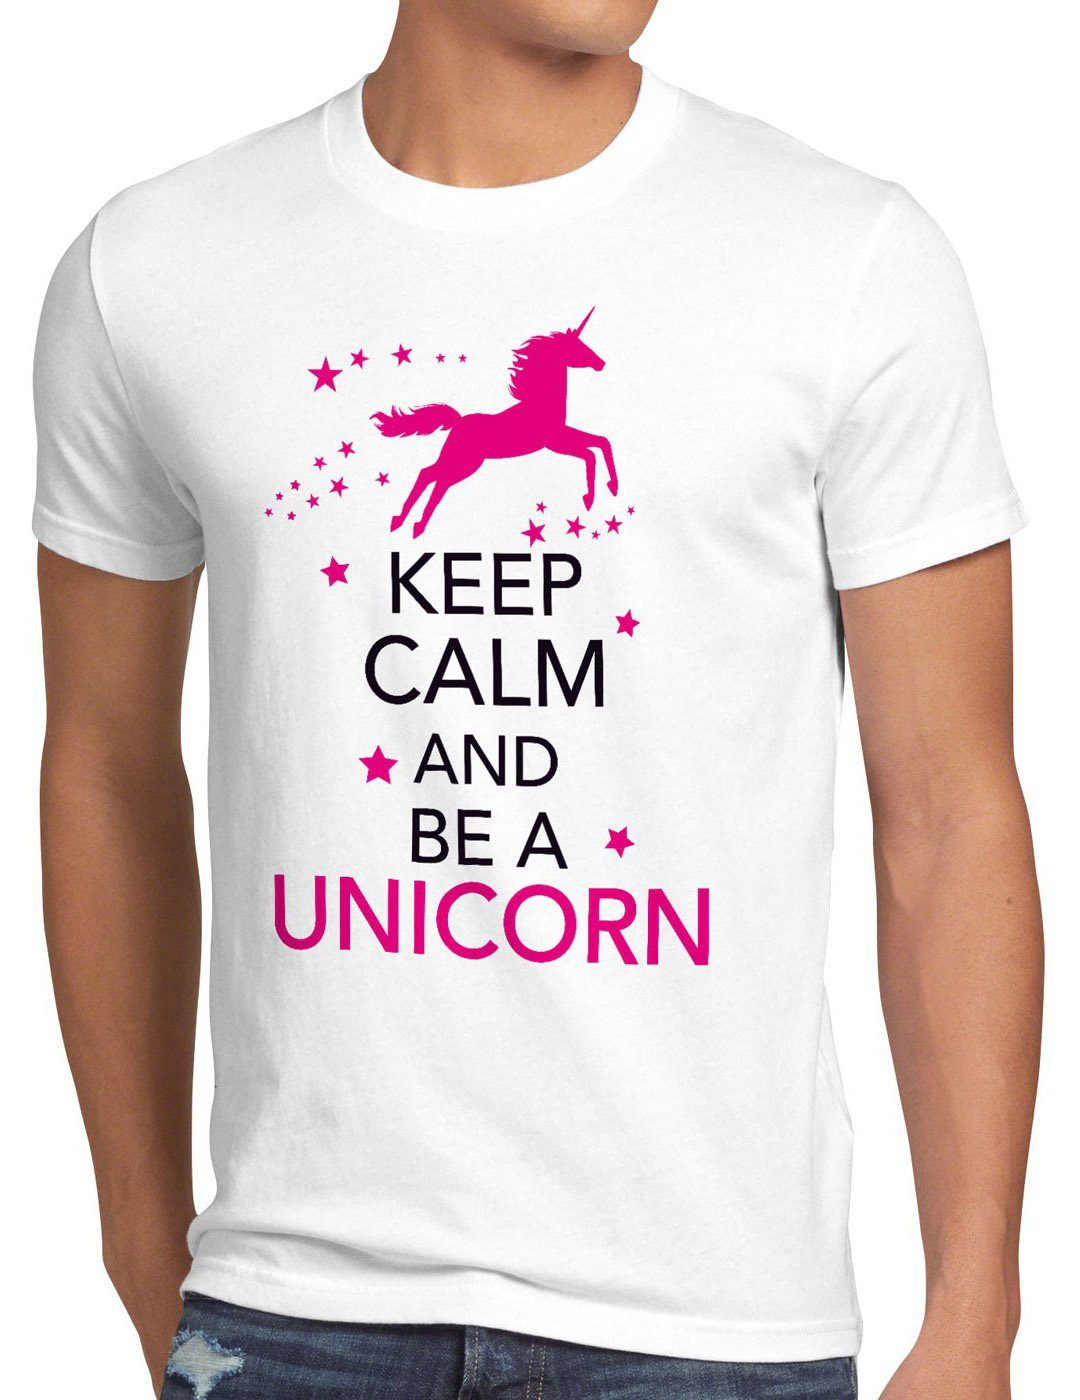 style3 Print-Shirt Herren T-Shirt fun be pferd top spruch Calm and a Keep weiß funshirt Unicorn Einhorn